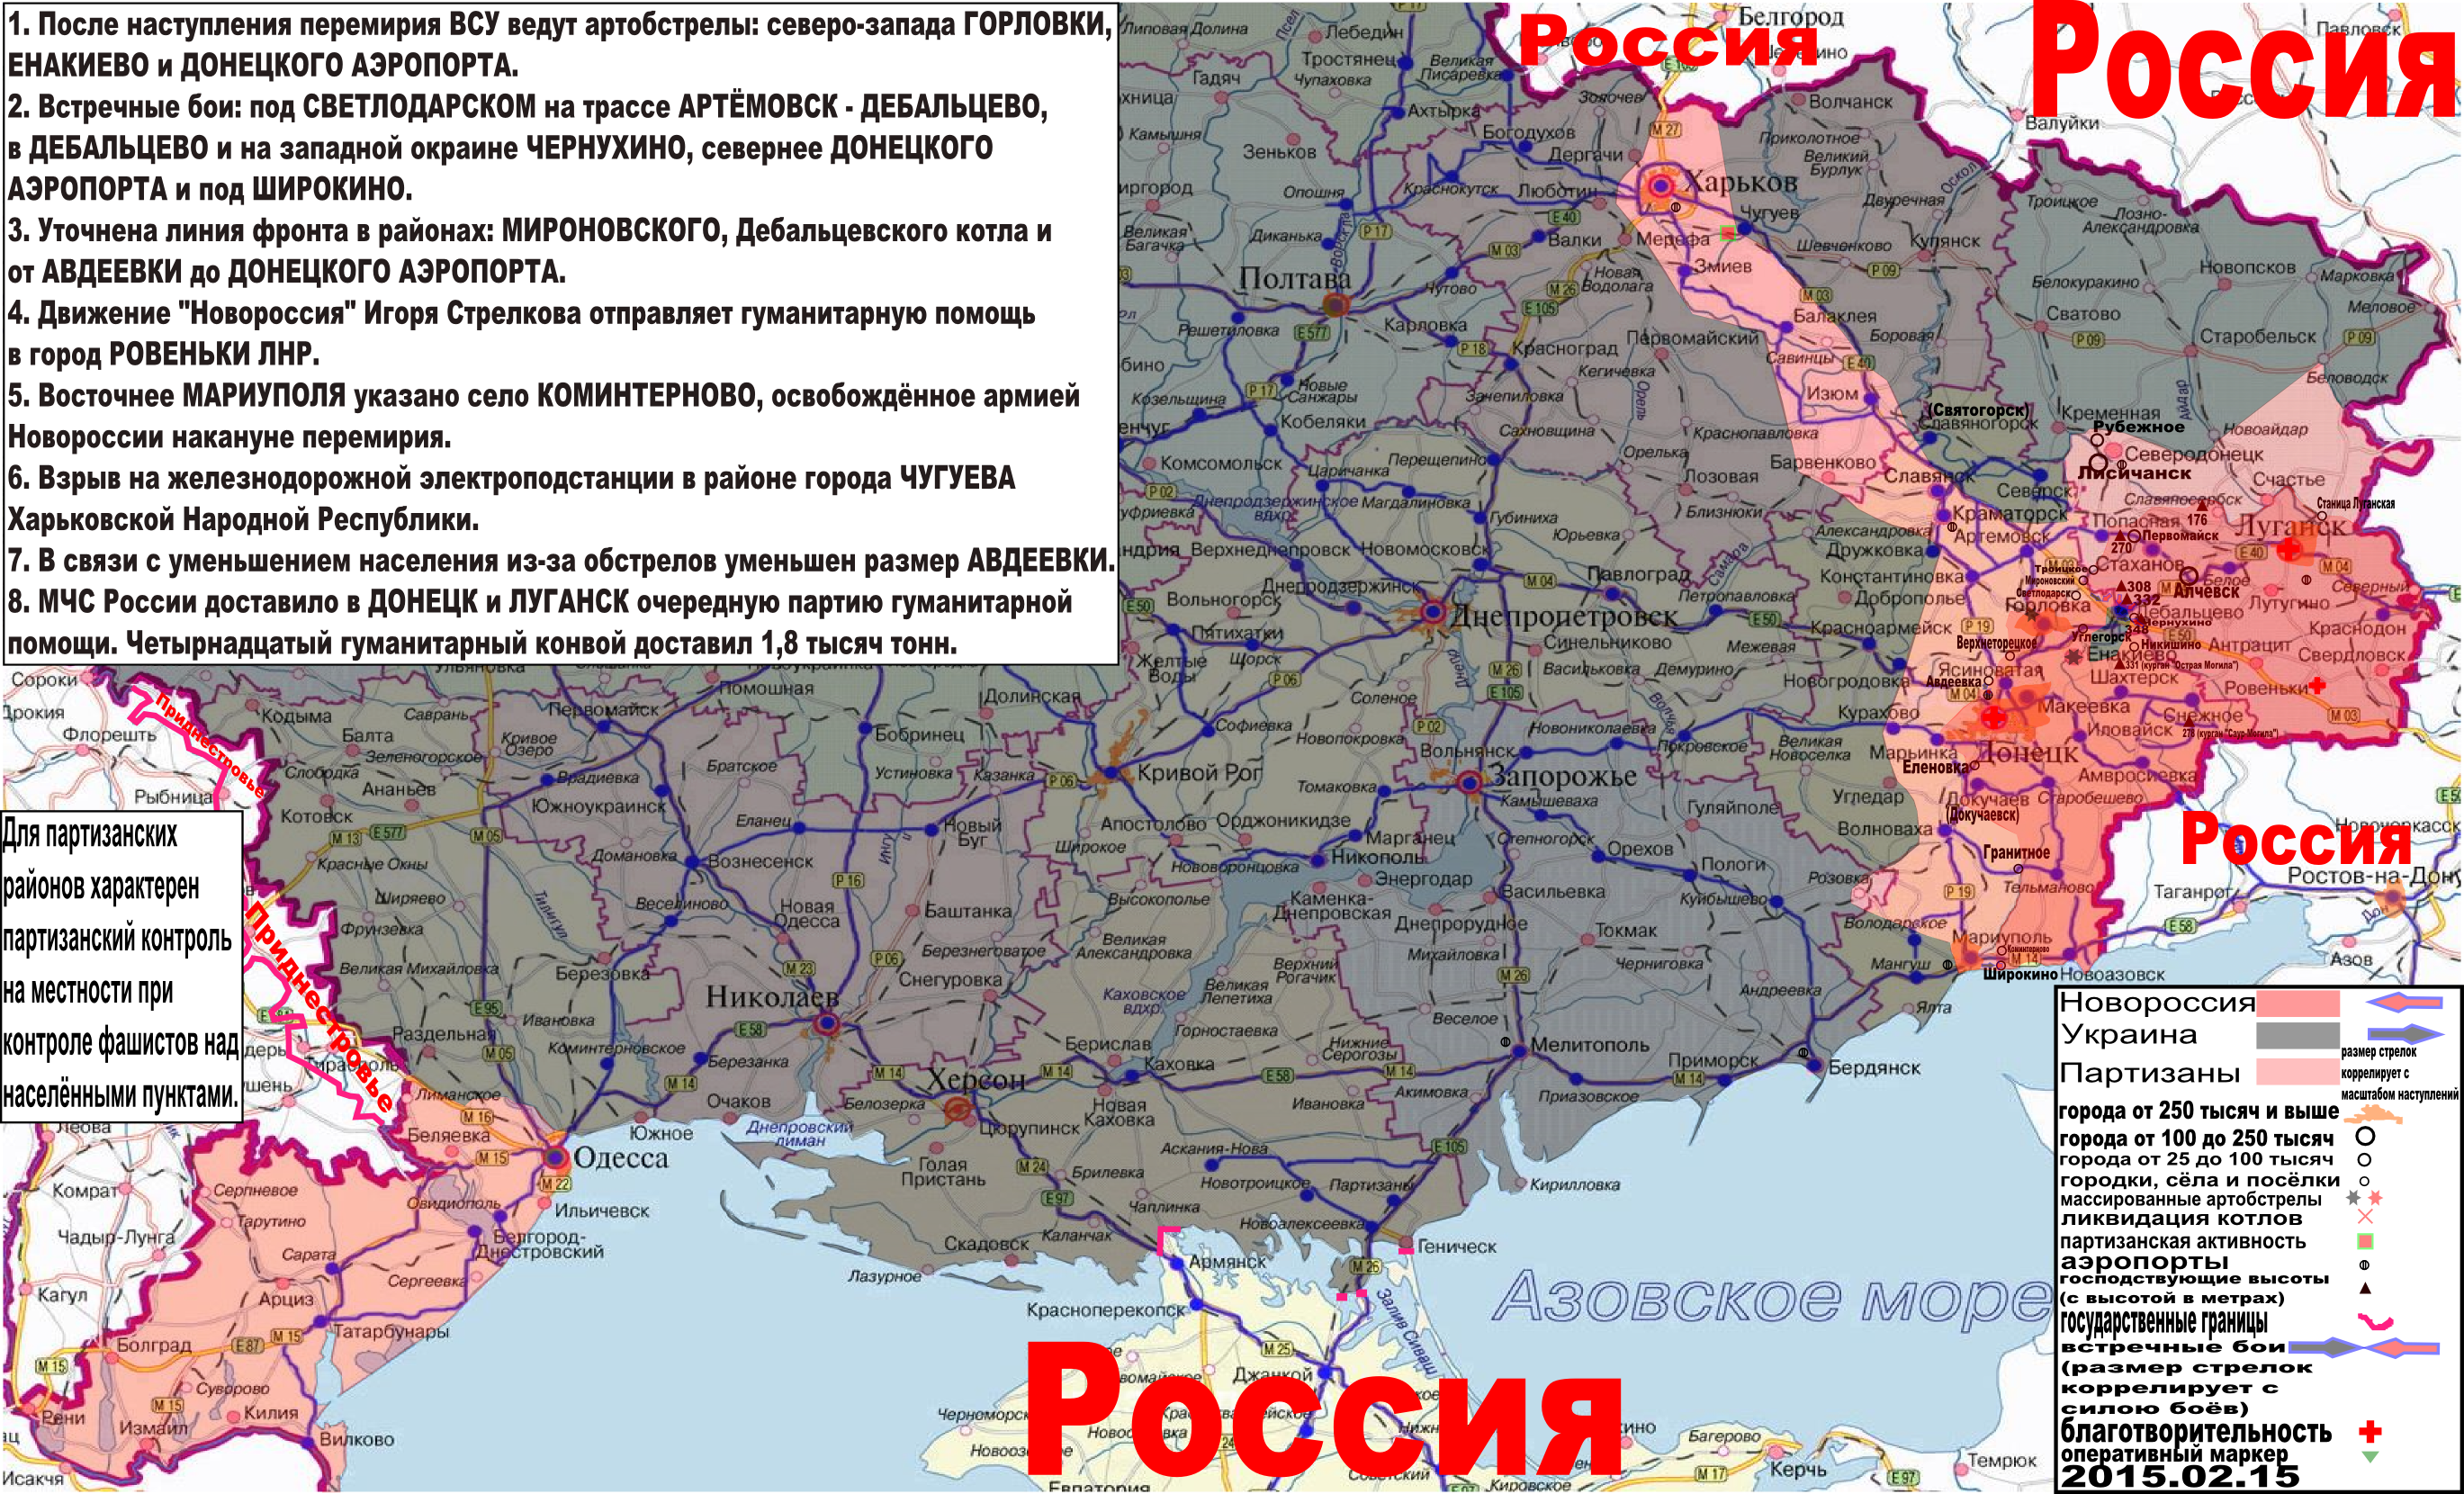 Карта боевых действий и событий в Новороссии с обозначением зон партизанской активности за 15 февраля 2015